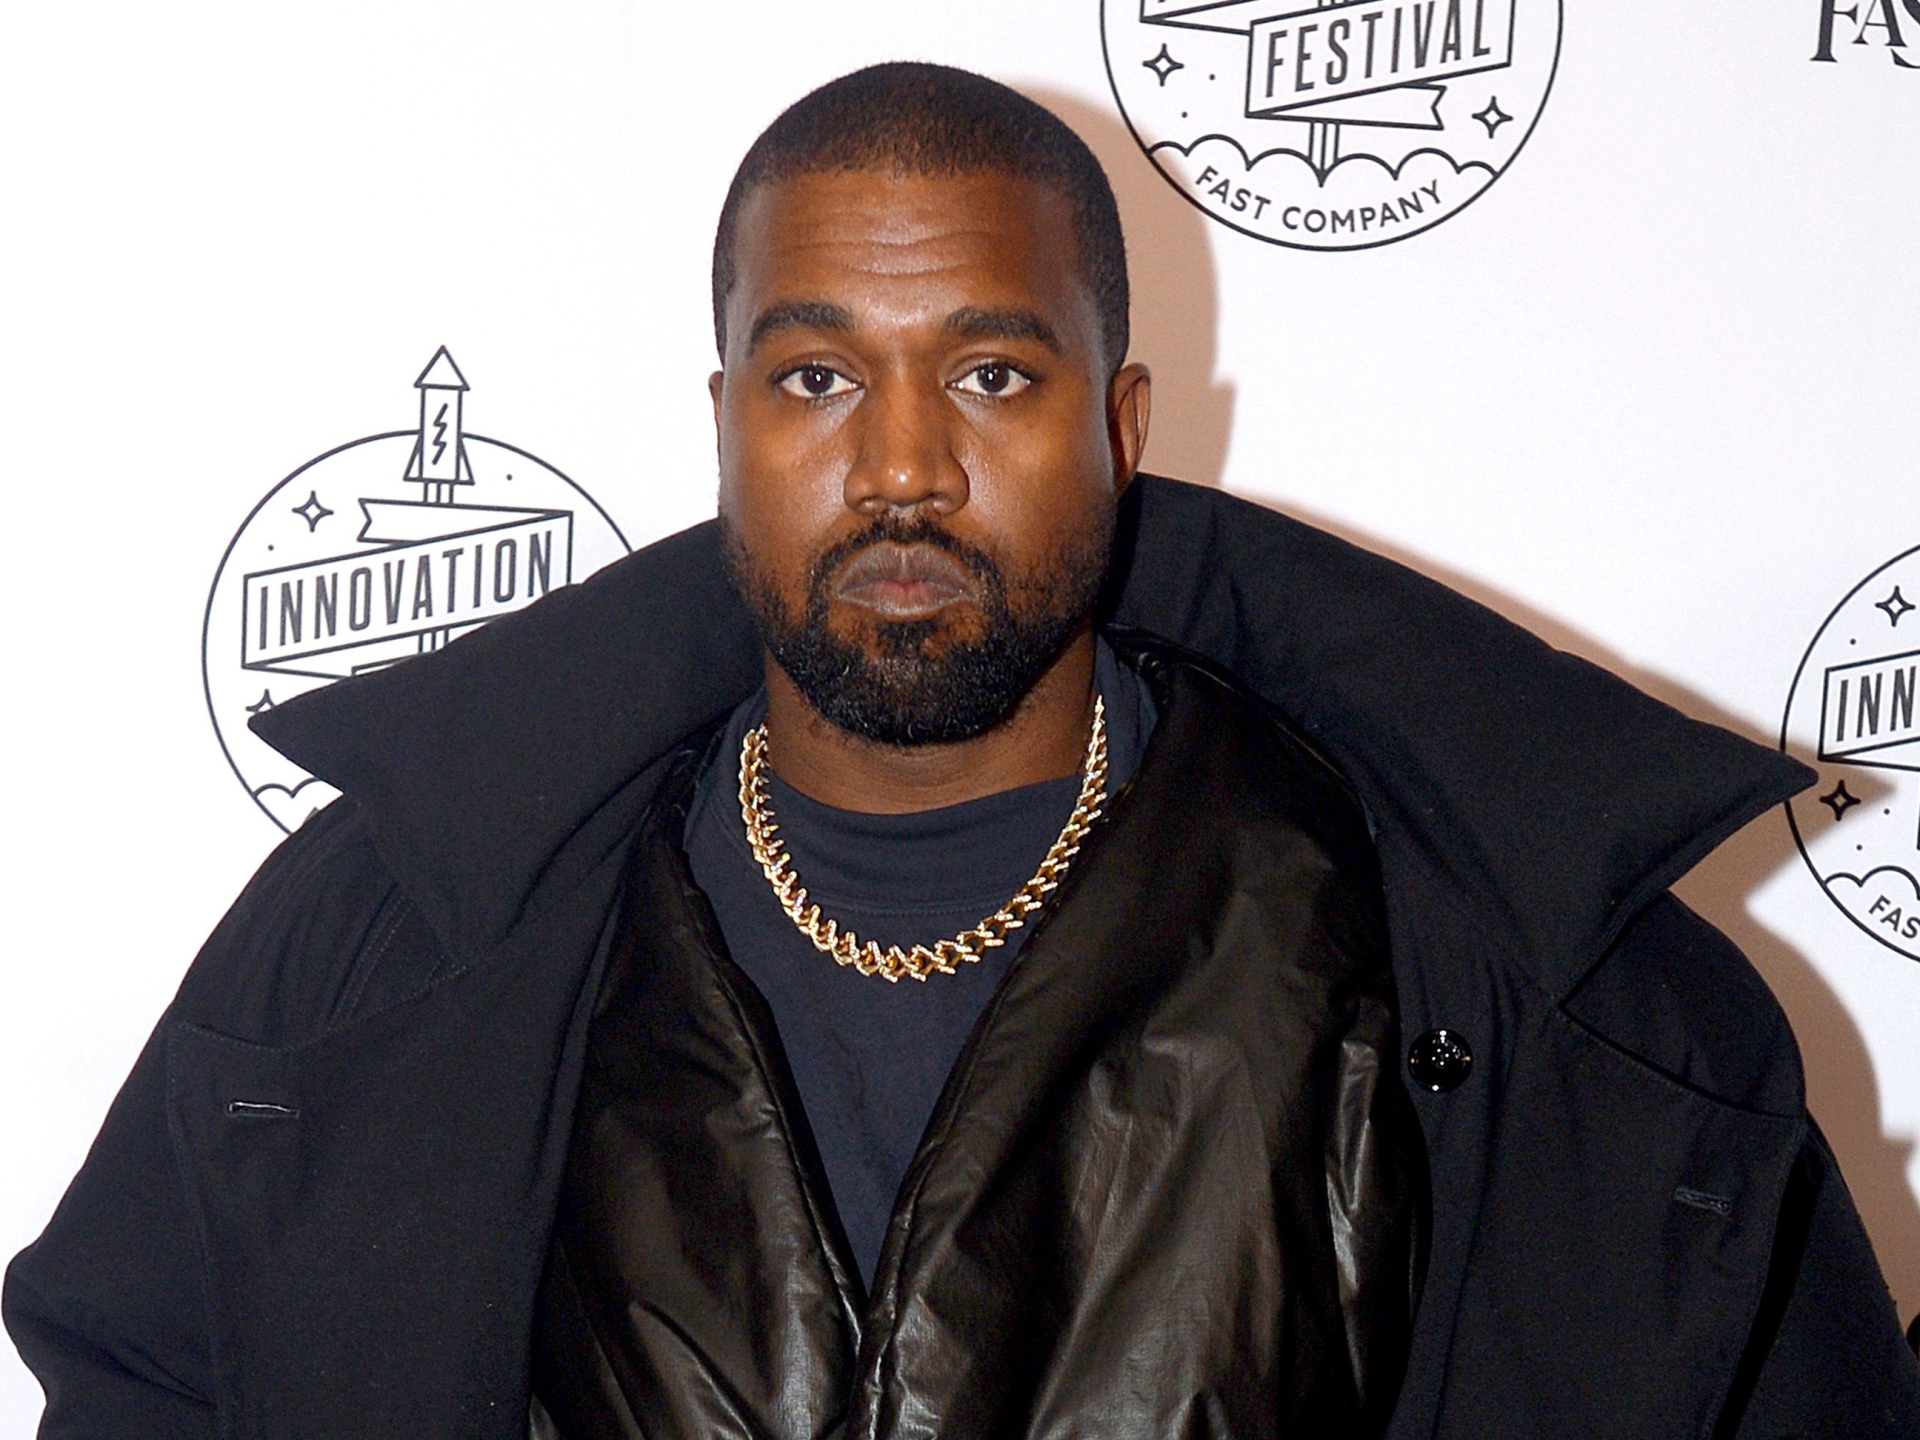 Kanye West hộ tống anh ấy từ văn phòng Skechers, nói nhãn hiệu giày |  tin tức phân biệt chủng tộc